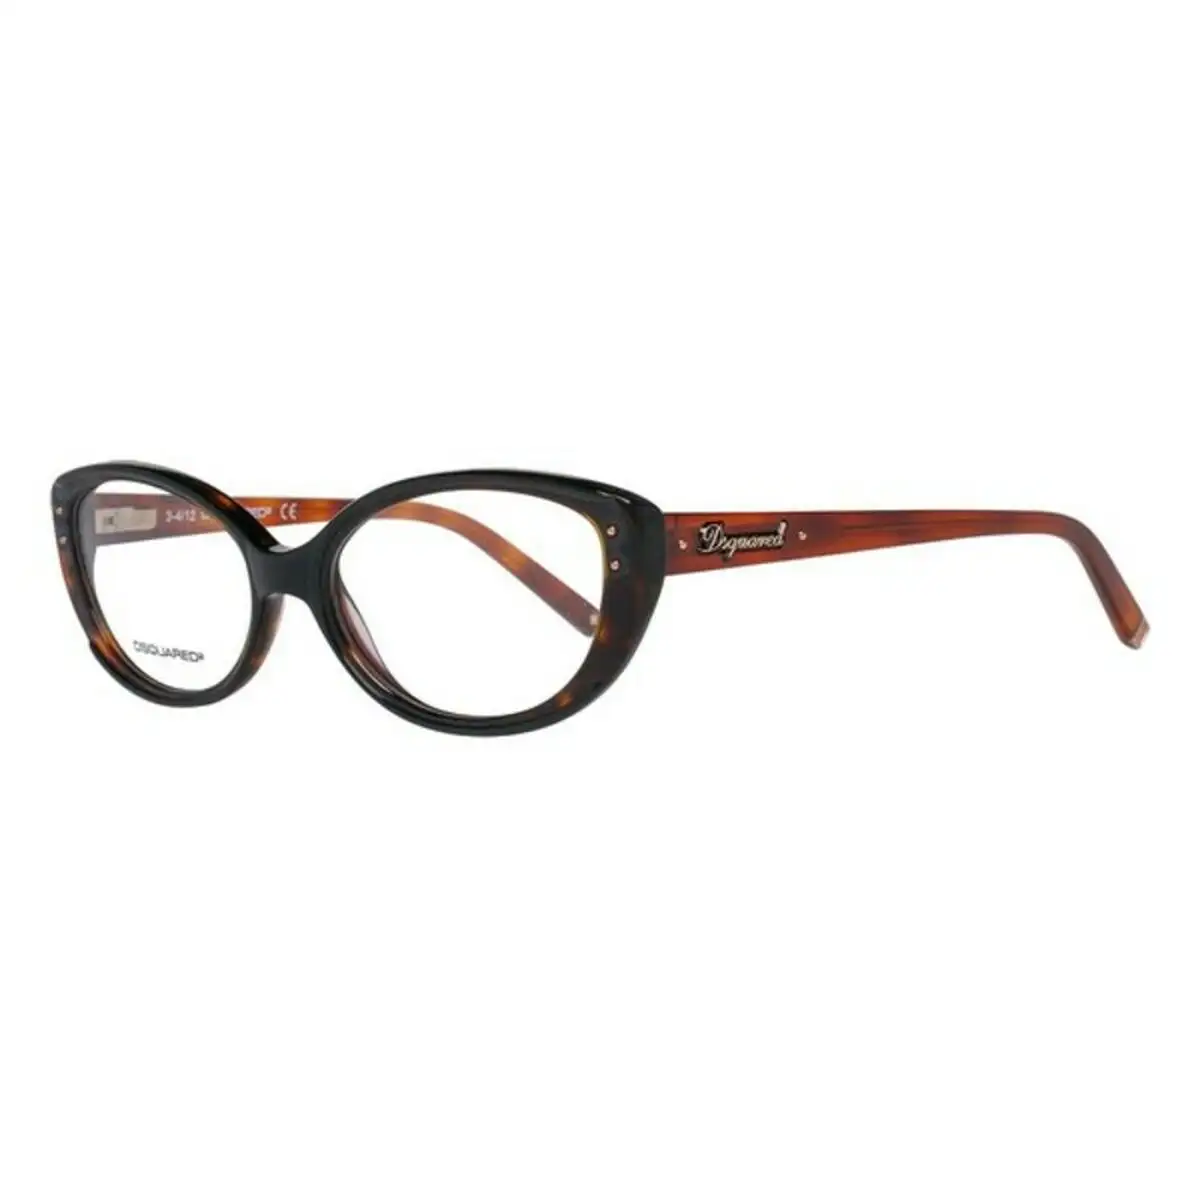 Monture de lunettes femme marron reconditionne a _4157. DIAYTAR SENEGAL - Là où Chaque Produit a son Propre Éclat. Explorez notre boutique en ligne et trouvez des articles qui ajoutent de la brillance à votre quotidien.